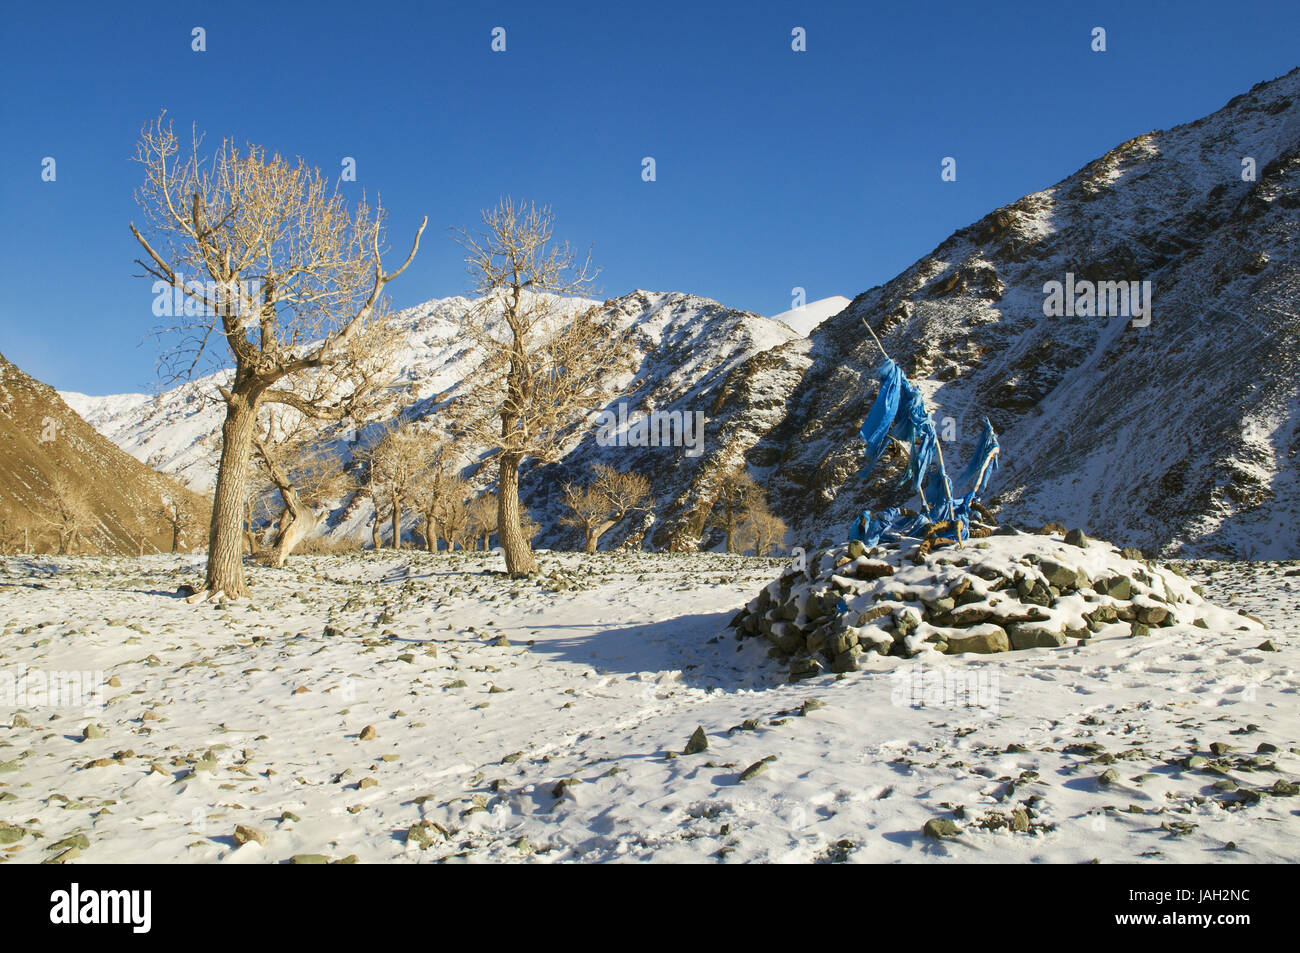 Mongolia,Khovd provincia,paesaggio invernale,alberi,cordoni bleu,Khatag,tradizionale saluto sciarpa, Foto Stock